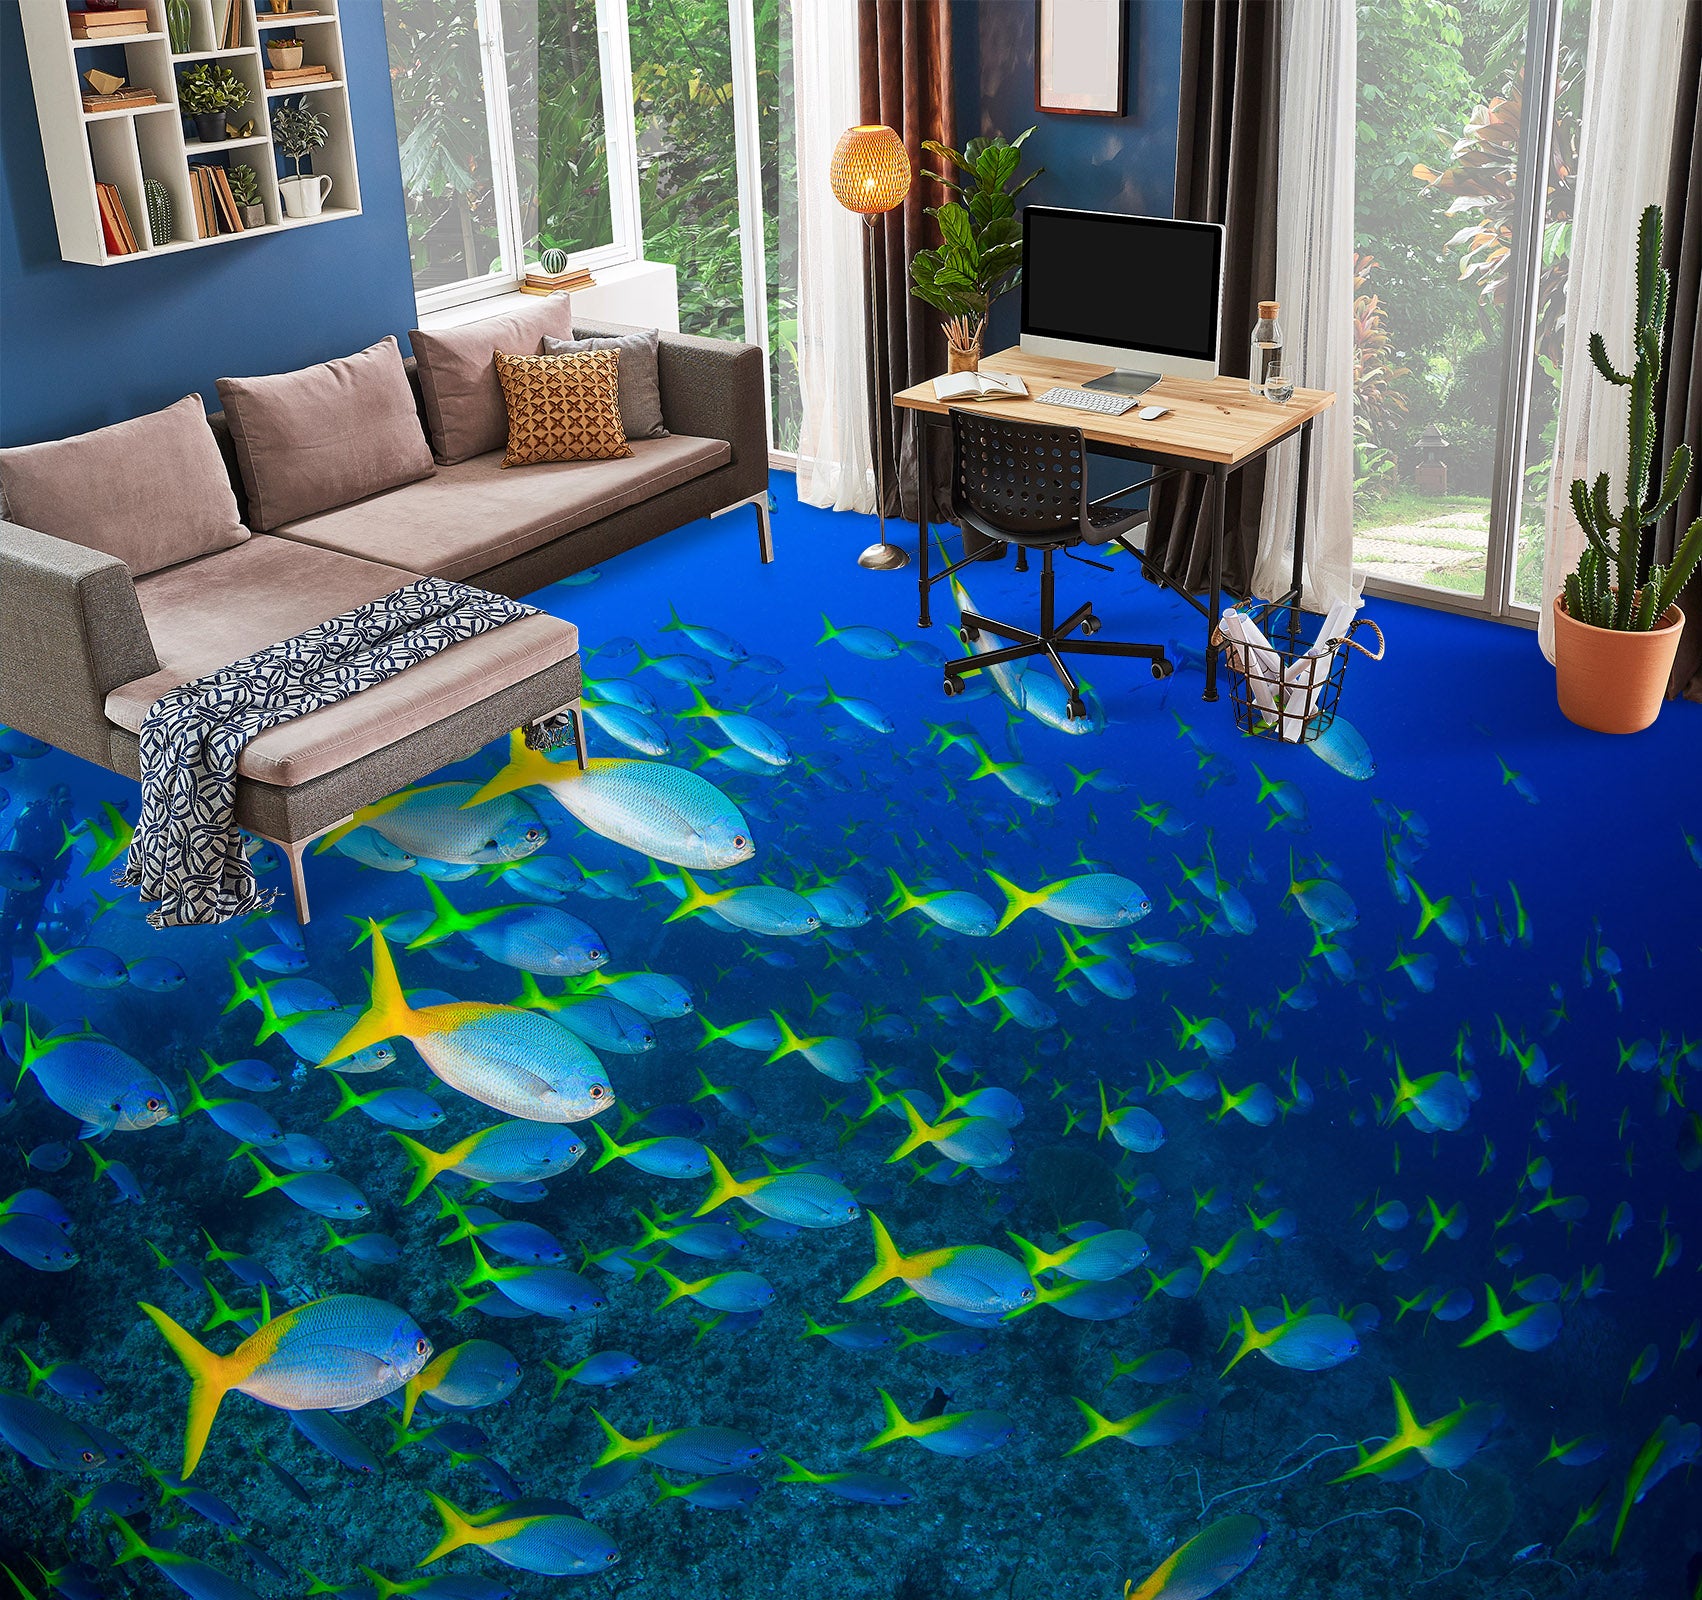 3D Fluorescent Green Fish Tail 741 Floor Mural  Wallpaper Murals Rug & Mat Print Epoxy waterproof bath floor